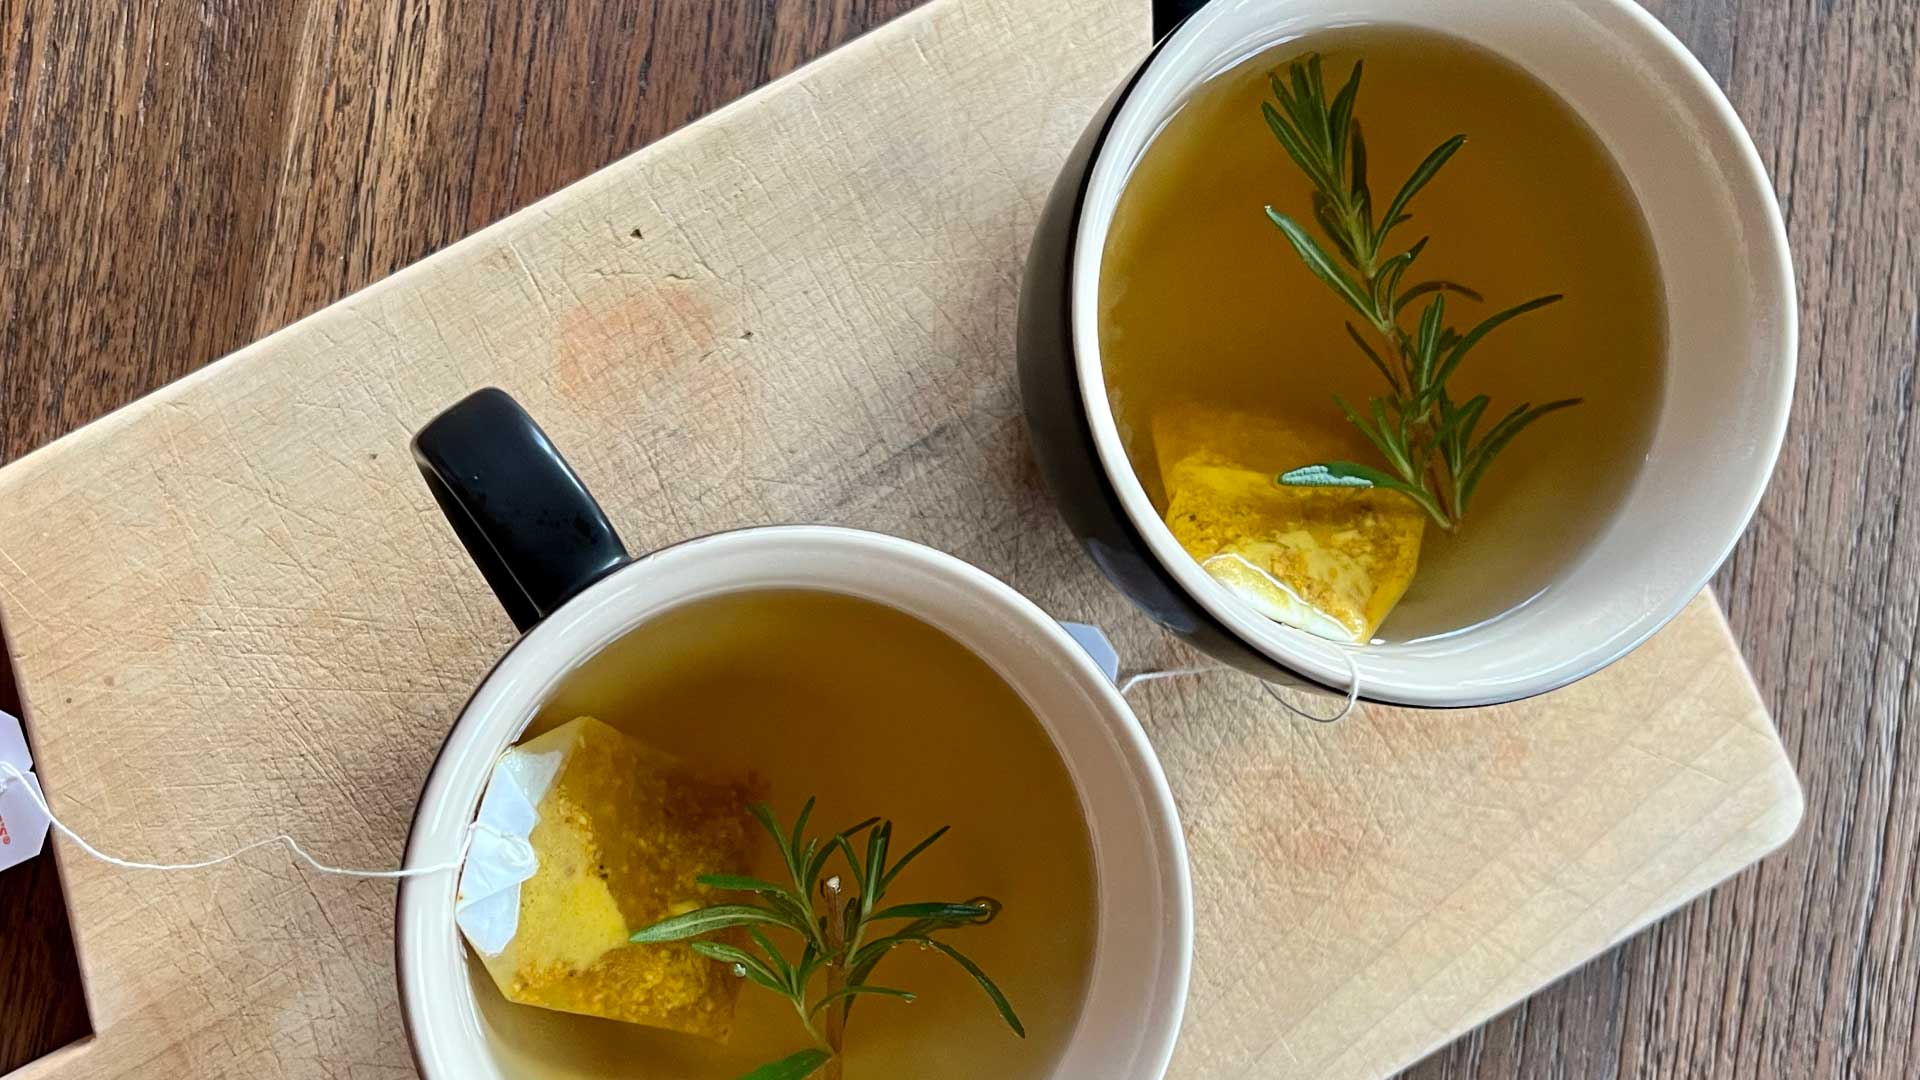 Anti-Inflammatory Tea Time: Ginger Turmeric Tea with Rosemary